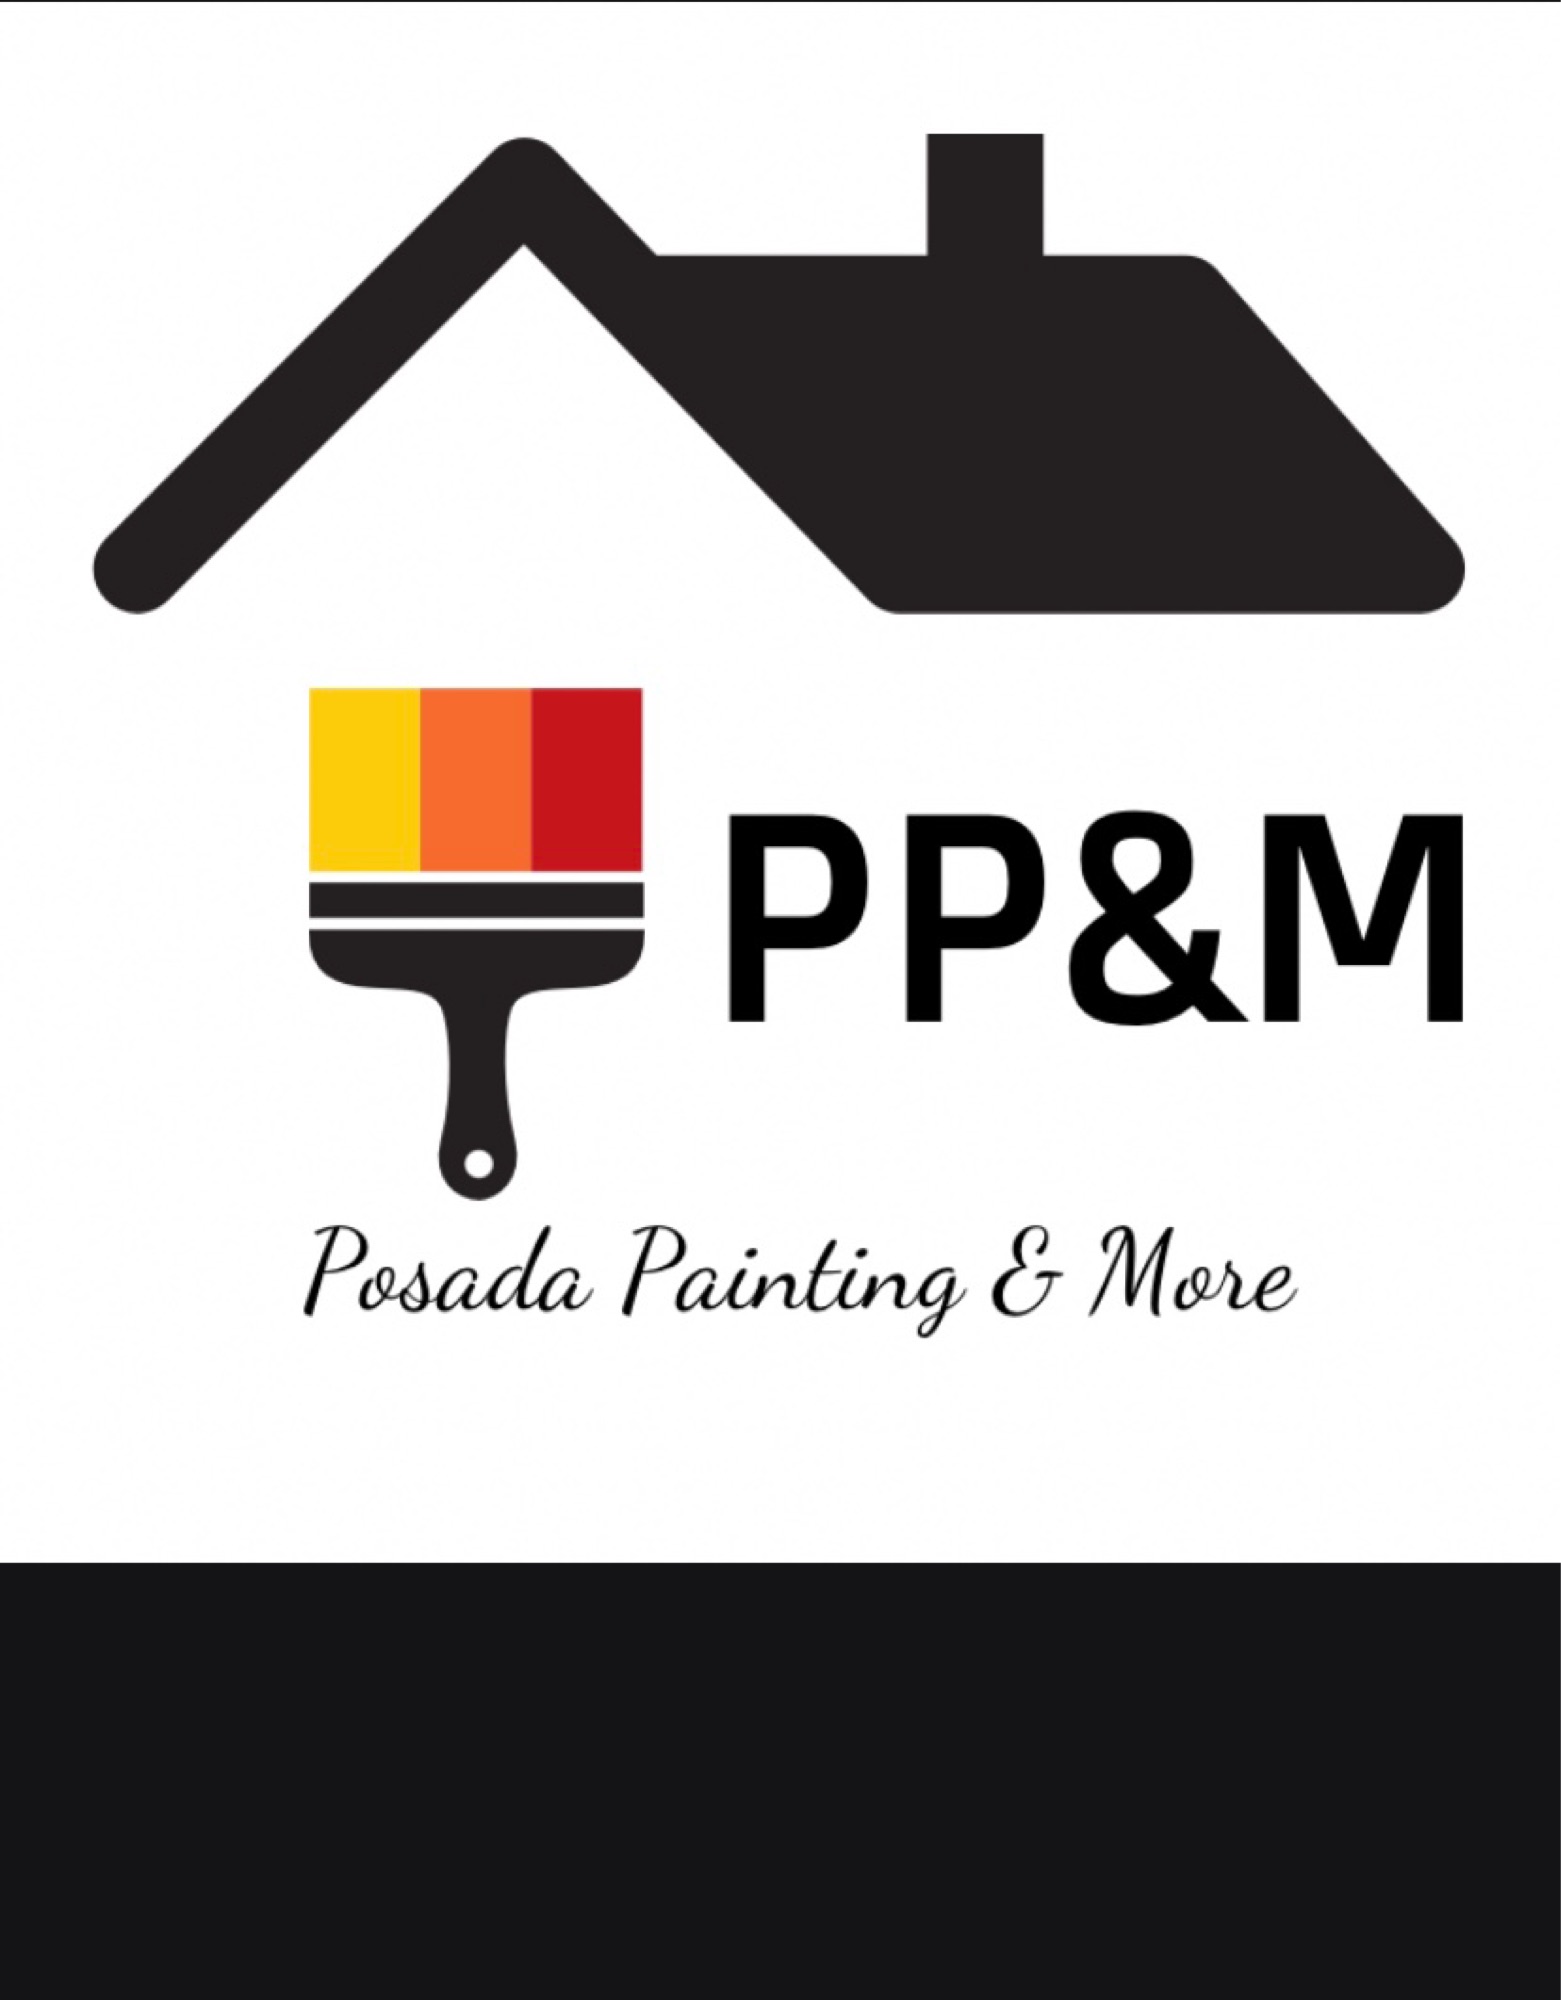 Posada Painting and More Logo